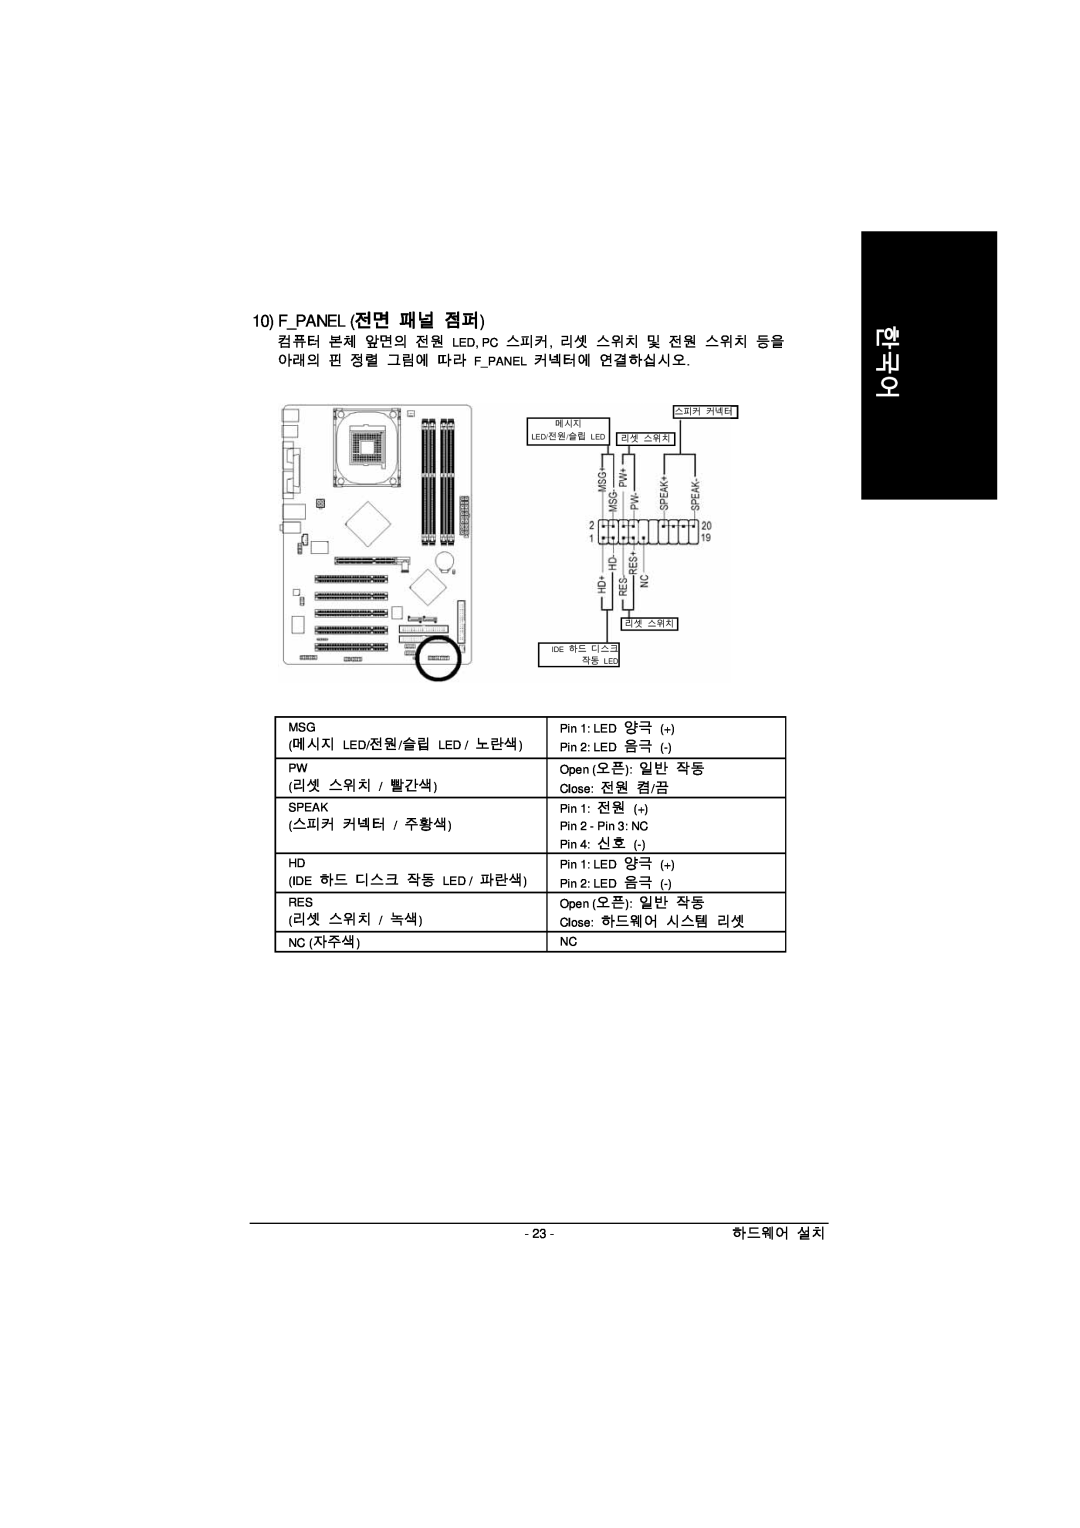 Intel GA-8IPE1000 manual Fpanel 전면 패널 점퍼, Pin 1 전원 + 